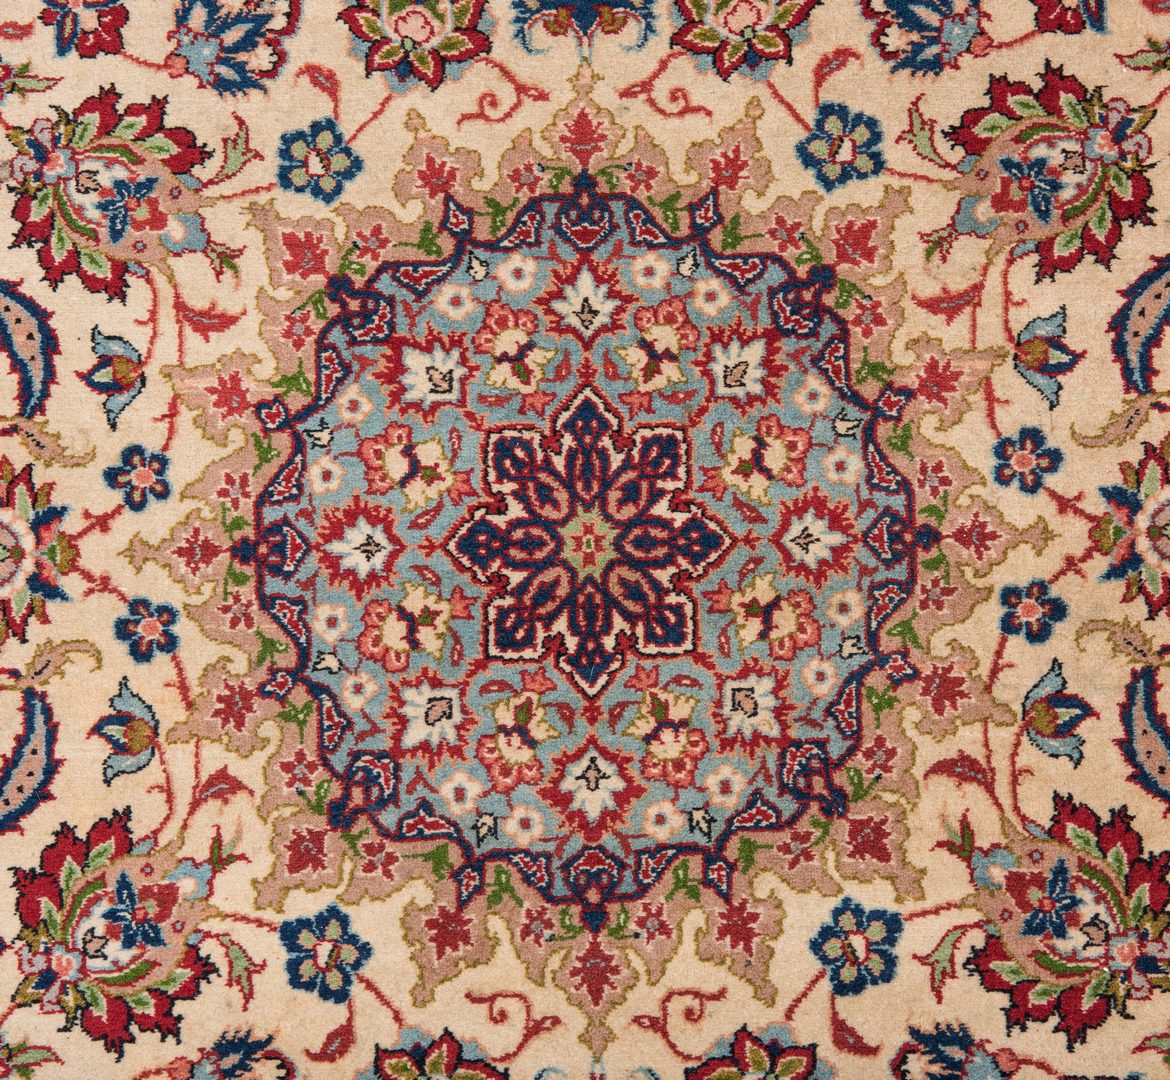 Lot 655: Persian Isfahan or Nain area rug